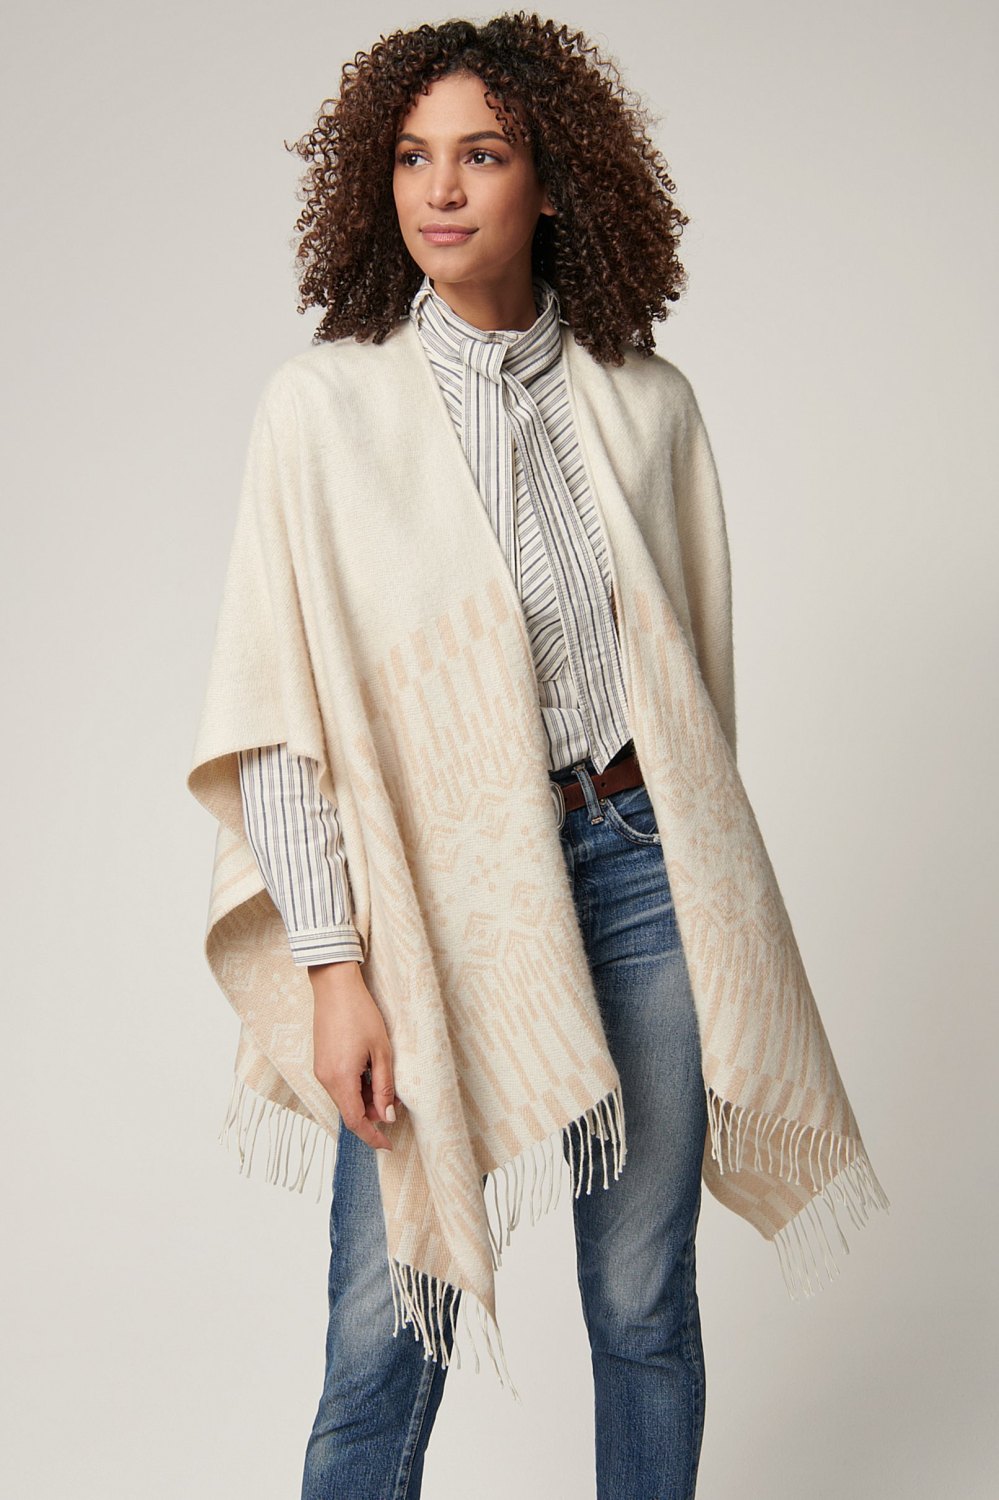 Bundle Up in Sheer Elegance With This Wool Wrap | Us Weekly